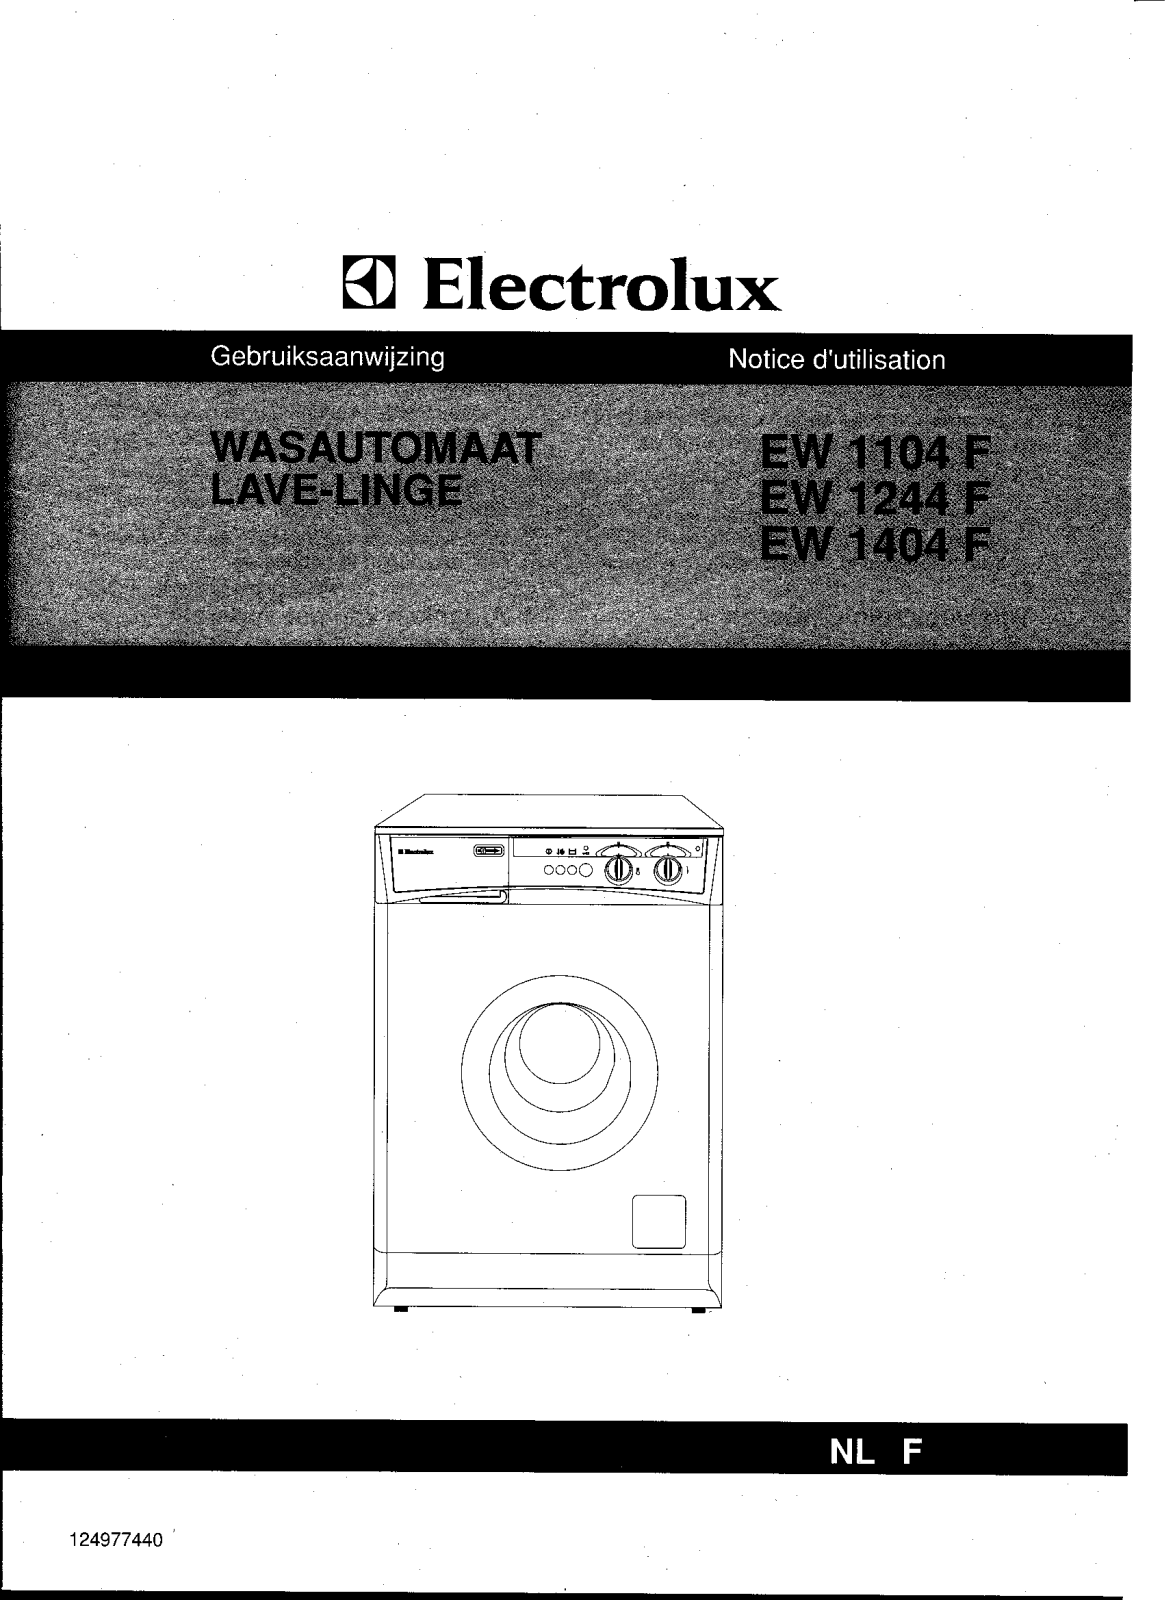 electrolux EW1104F, EW1244F, EW1404F User Manual